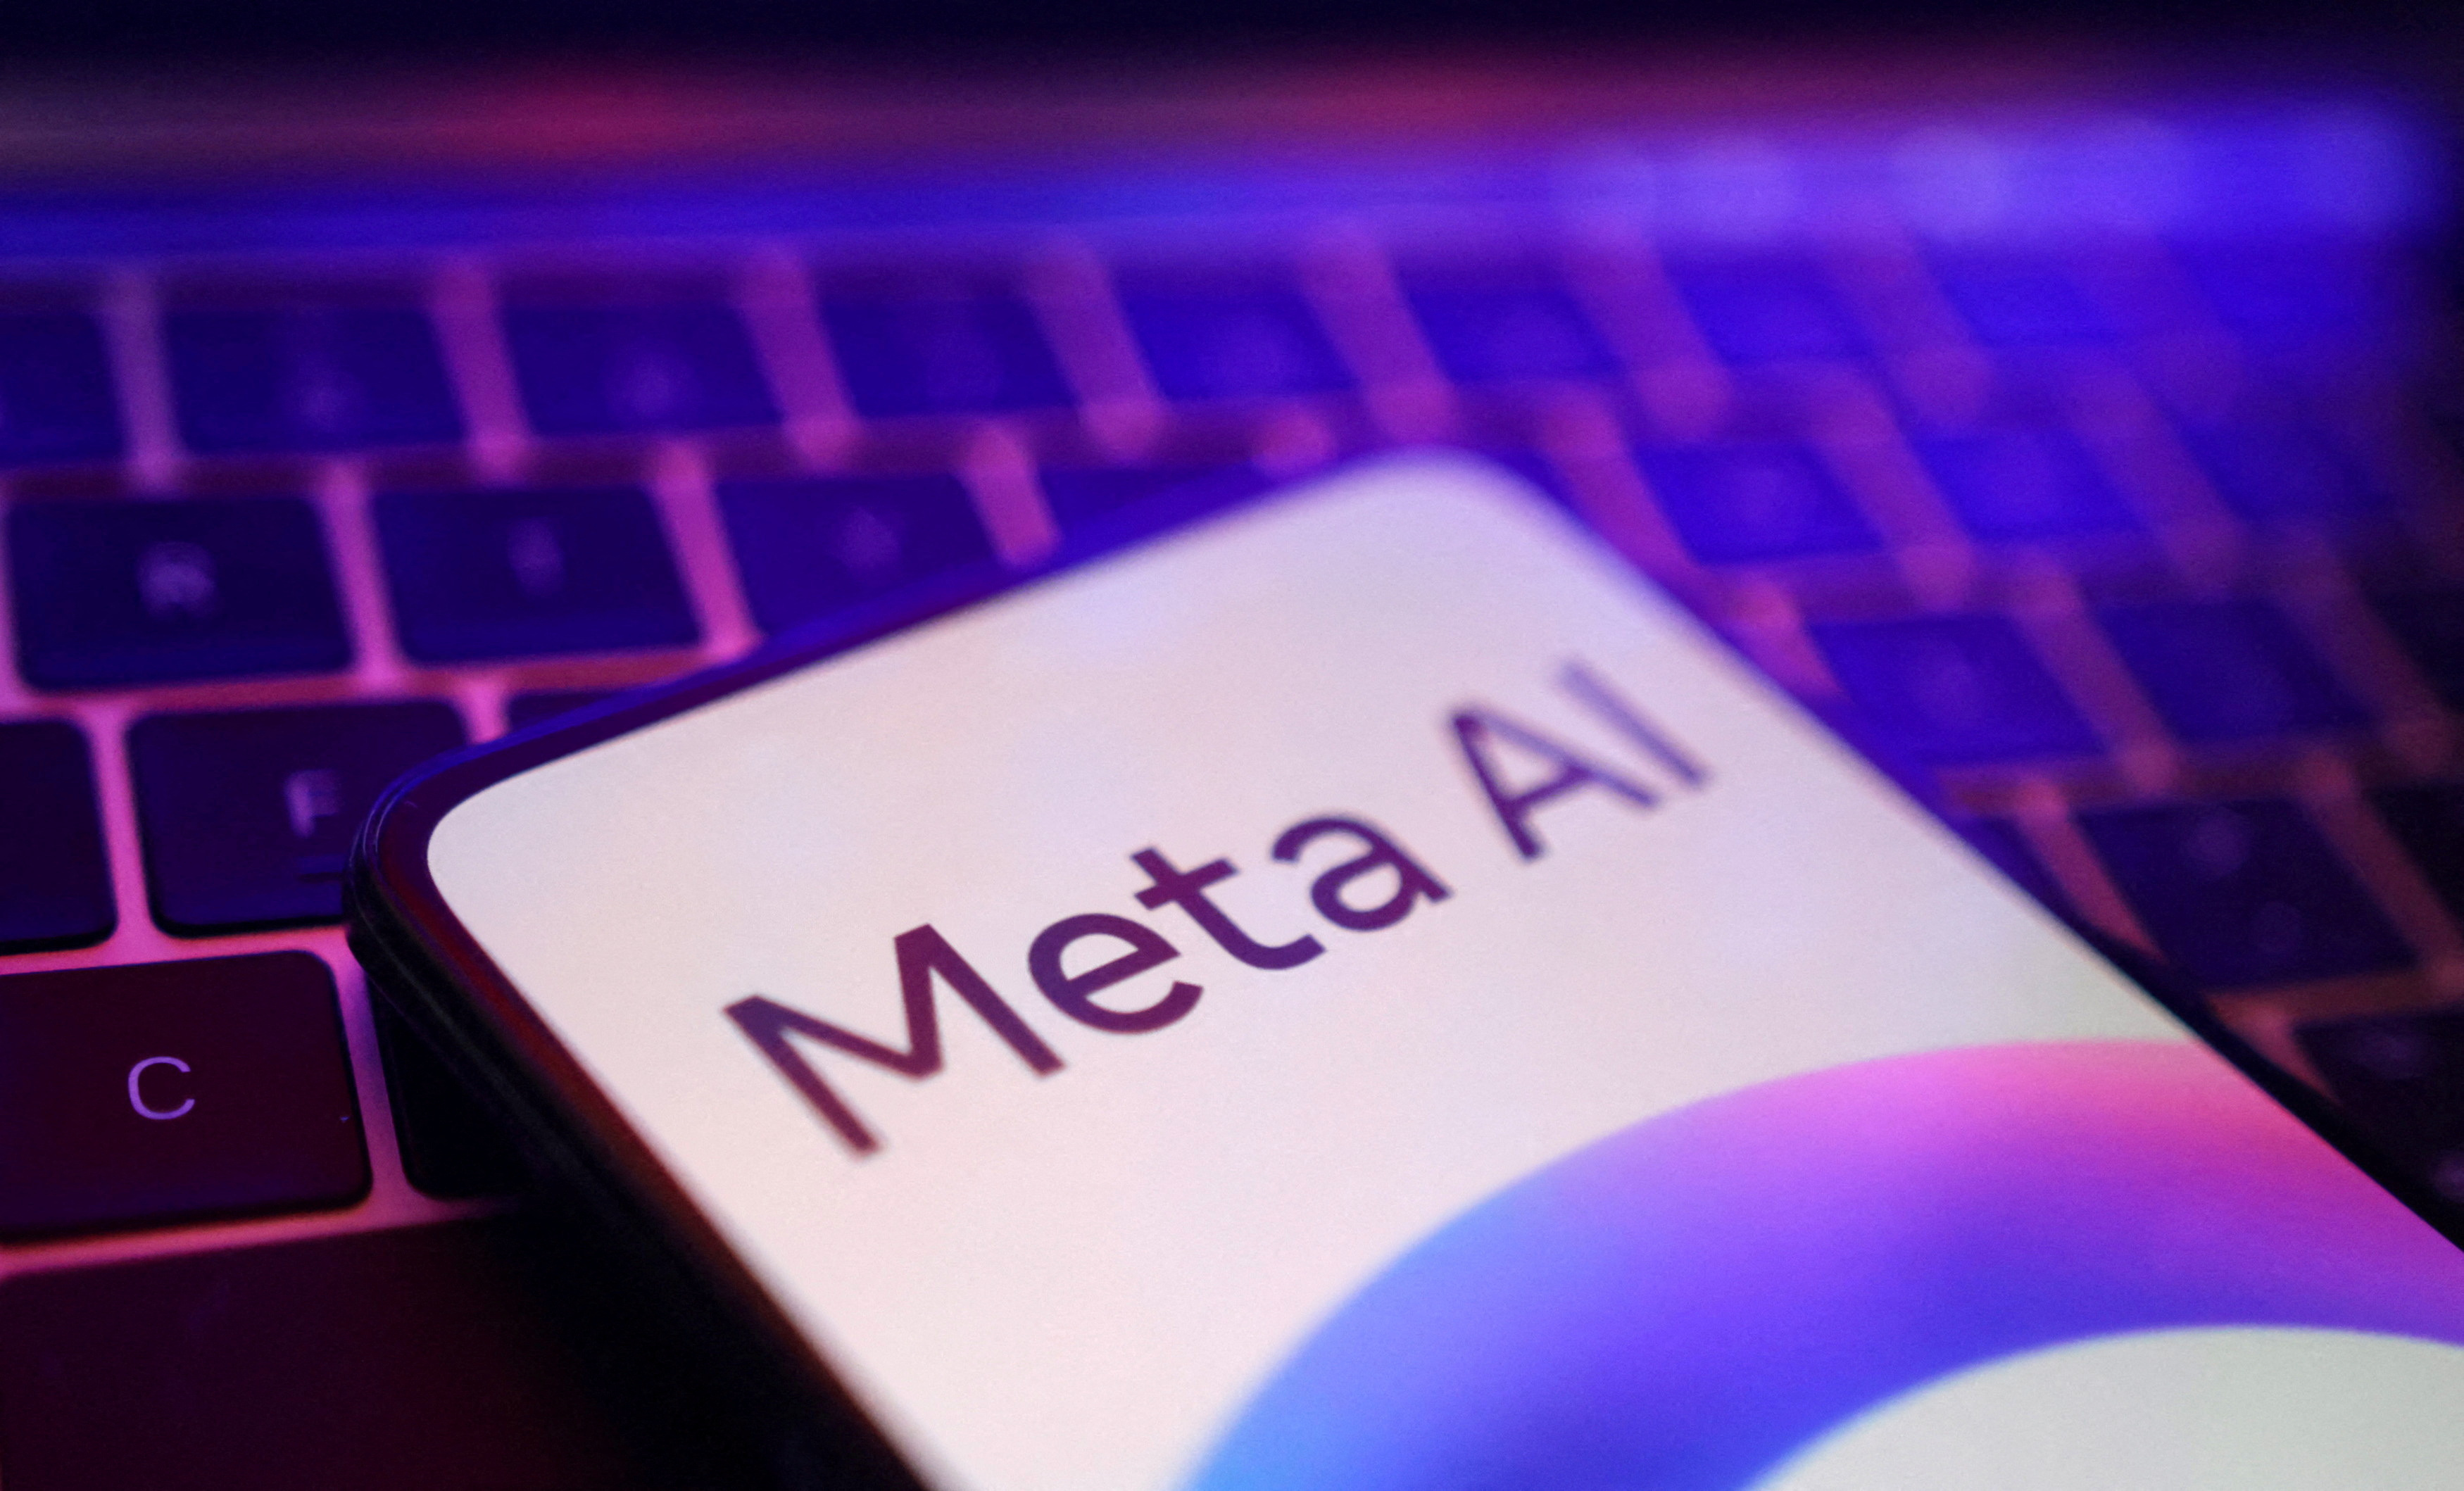 Illustration shows Meta AI logo